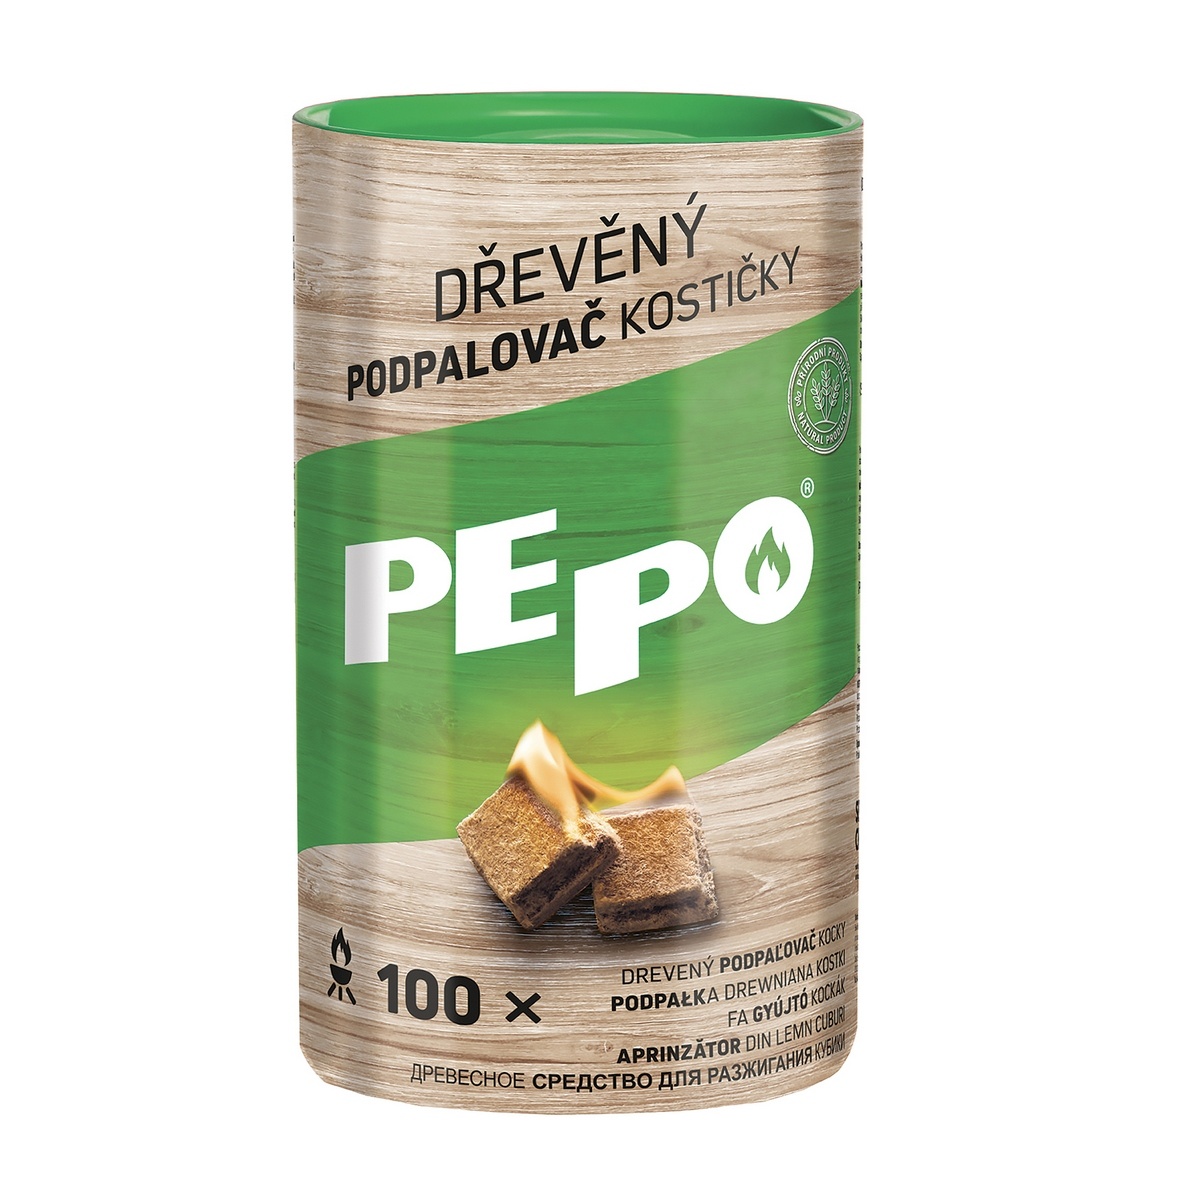 PE-PO-Dreveny-podpalovac-kosticky-100-ks